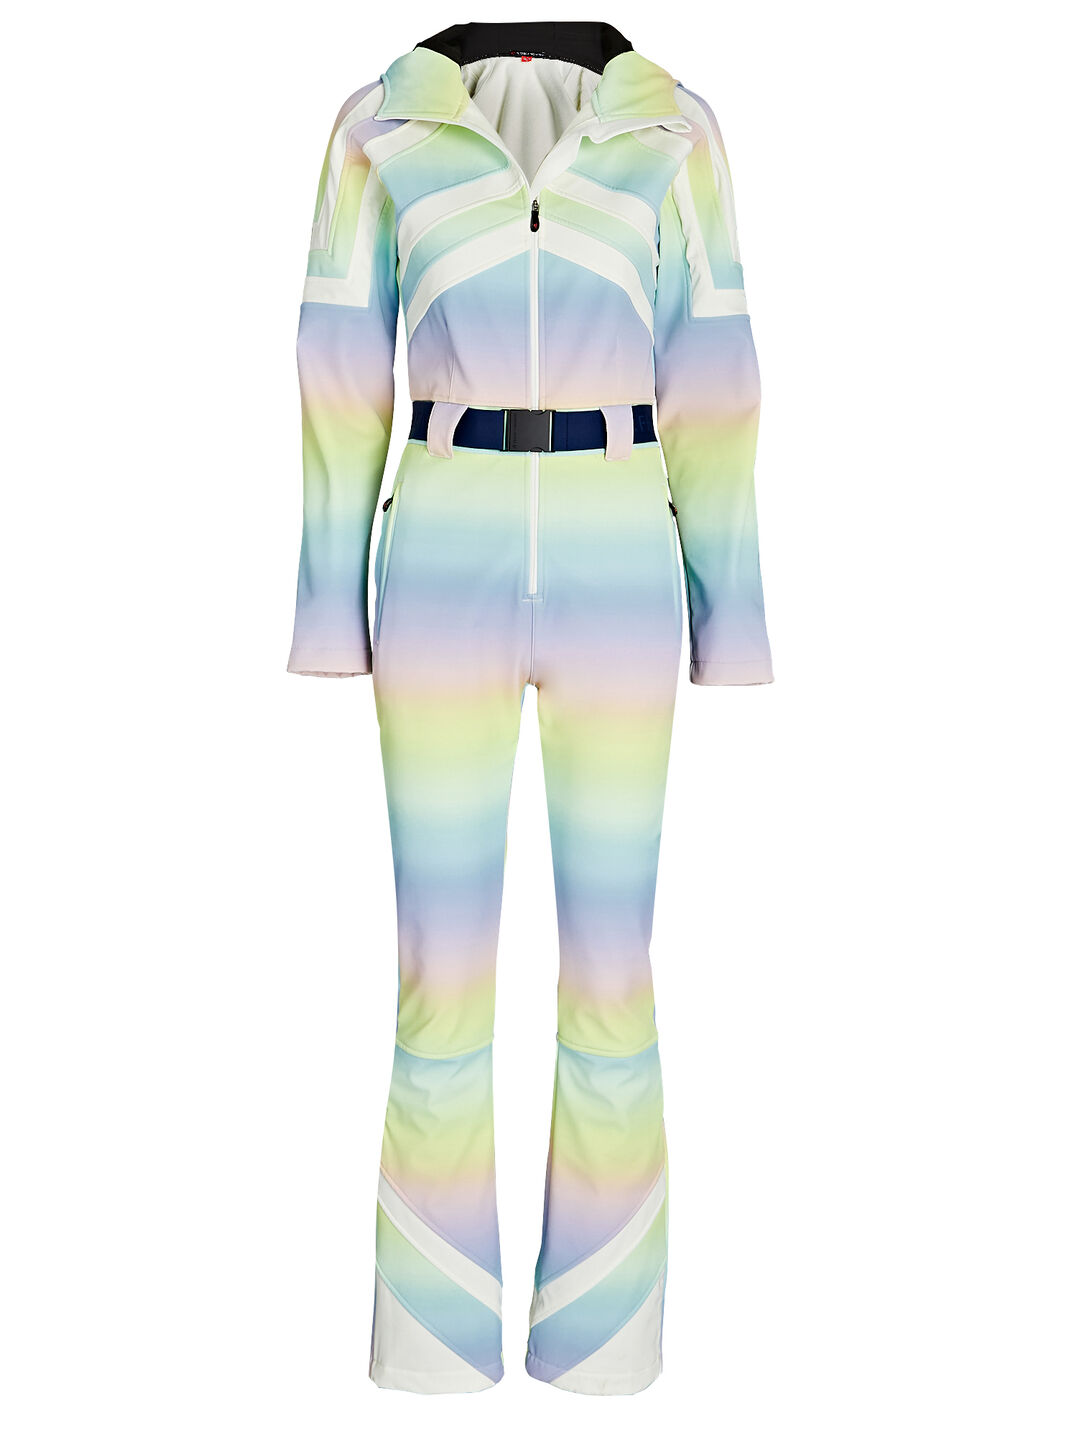 Tignes Rainbow Ski Suit